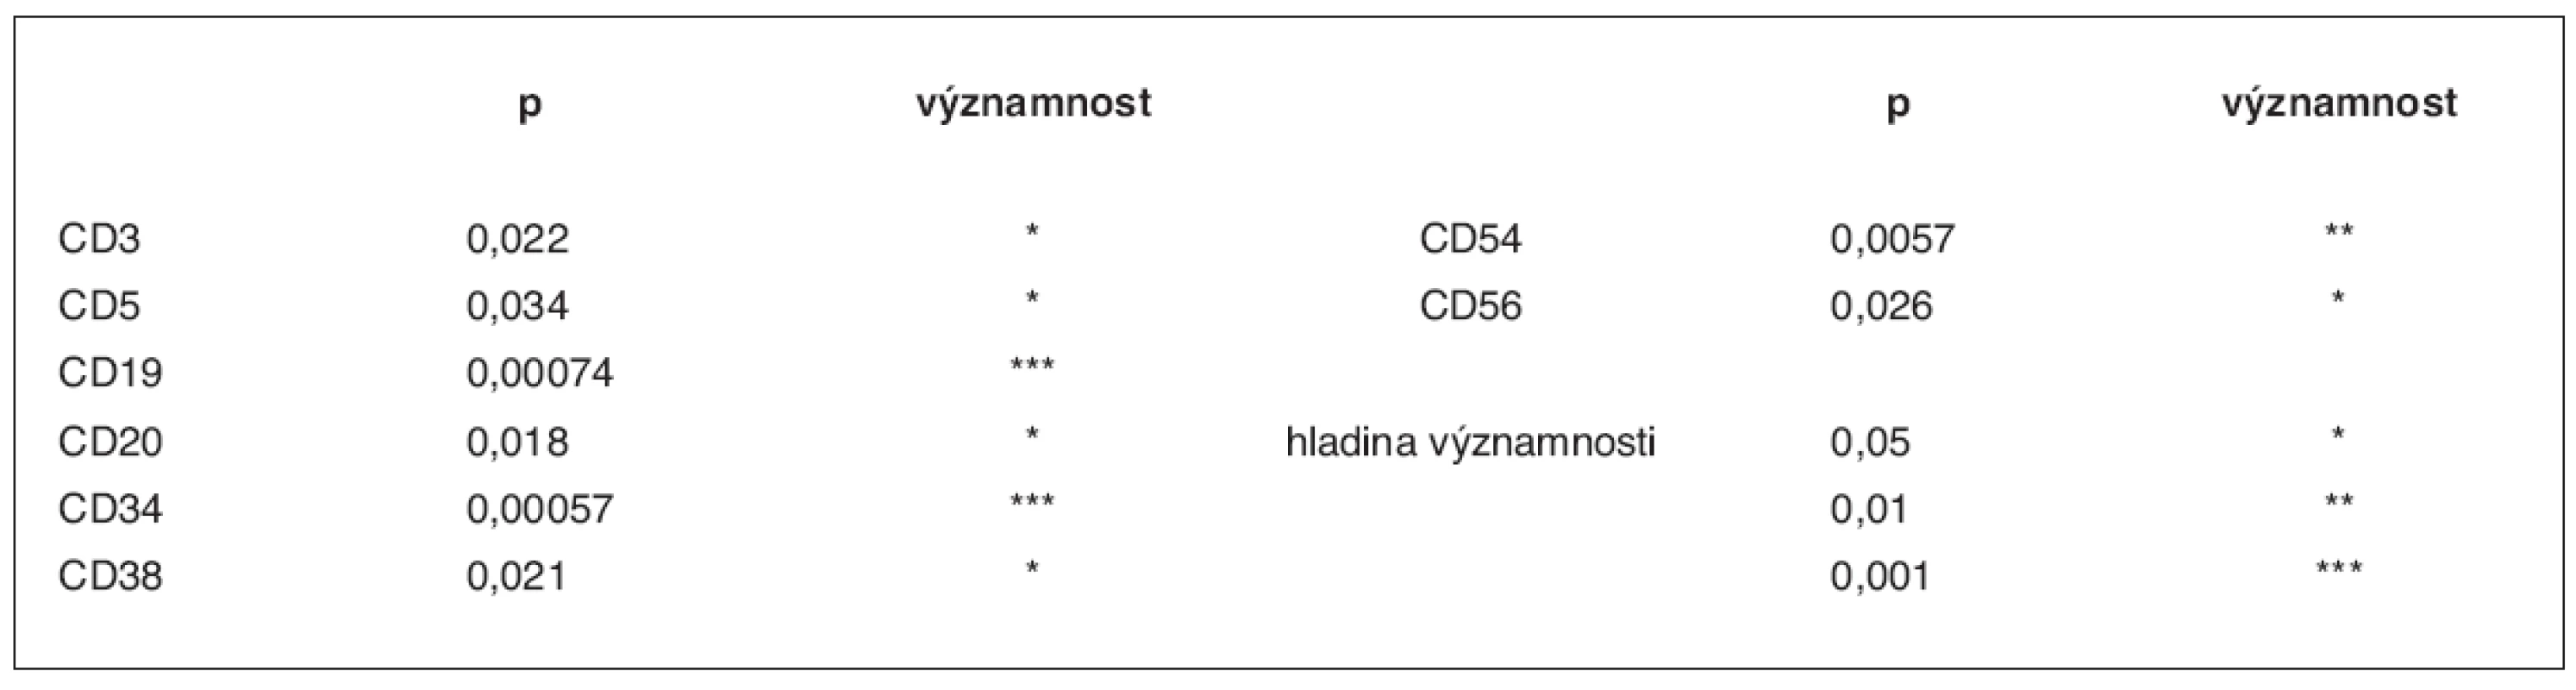 Statisticky významné rozdíly v zastoupení subpopulací CD34+ buněk mezi oběma růstovými faktory